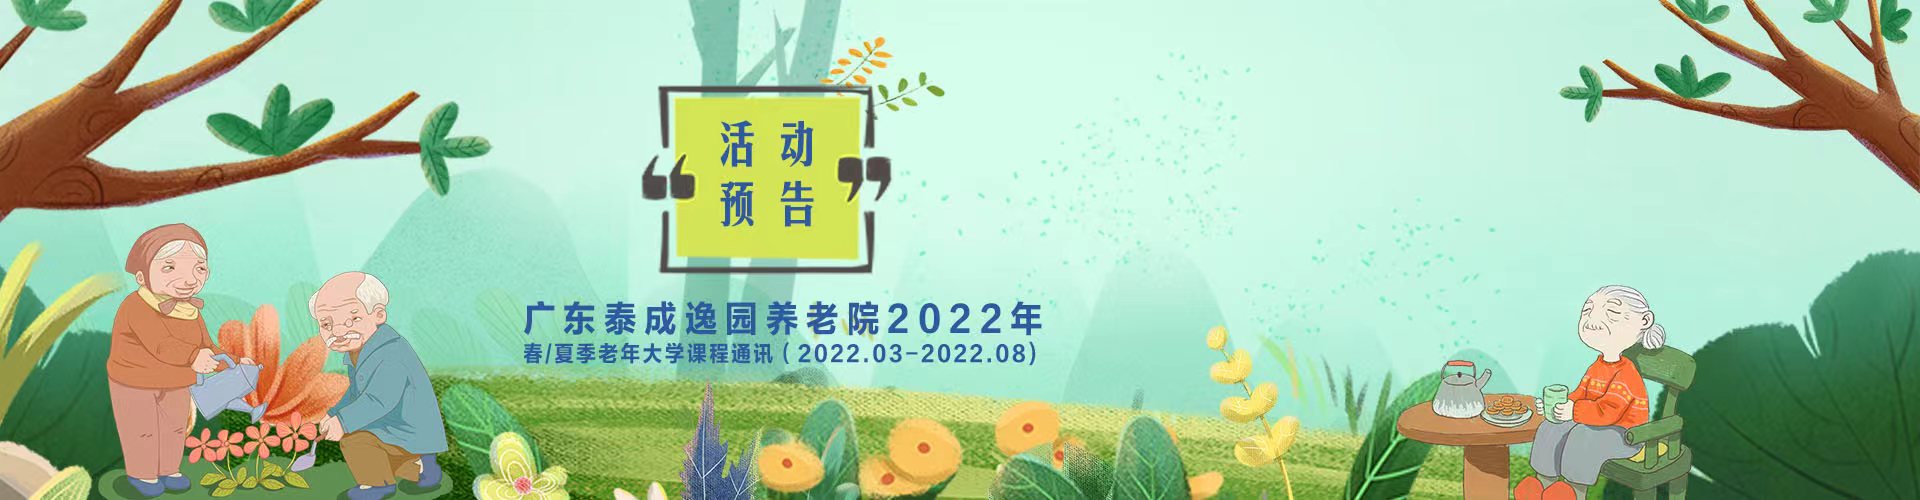 广东泰成逸园养老院2022年老年大学课程通讯